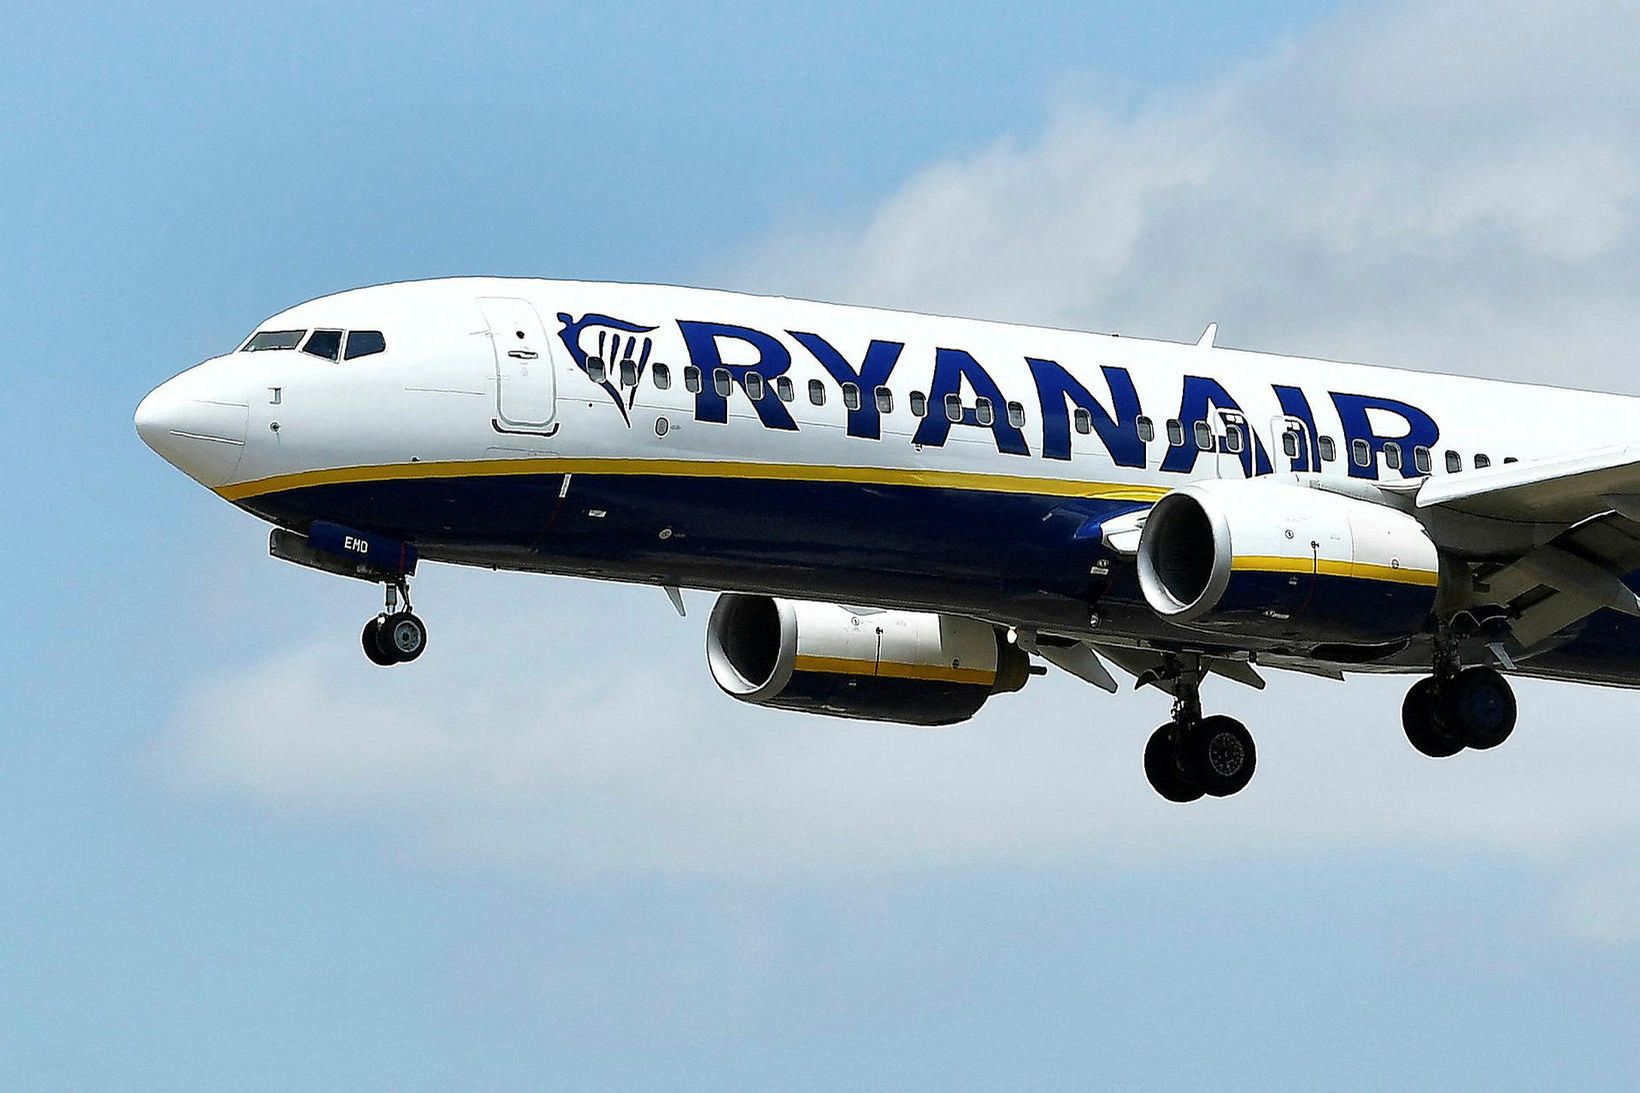 Töluverð röskun er að flugi Ryanair vegna verkfalla.